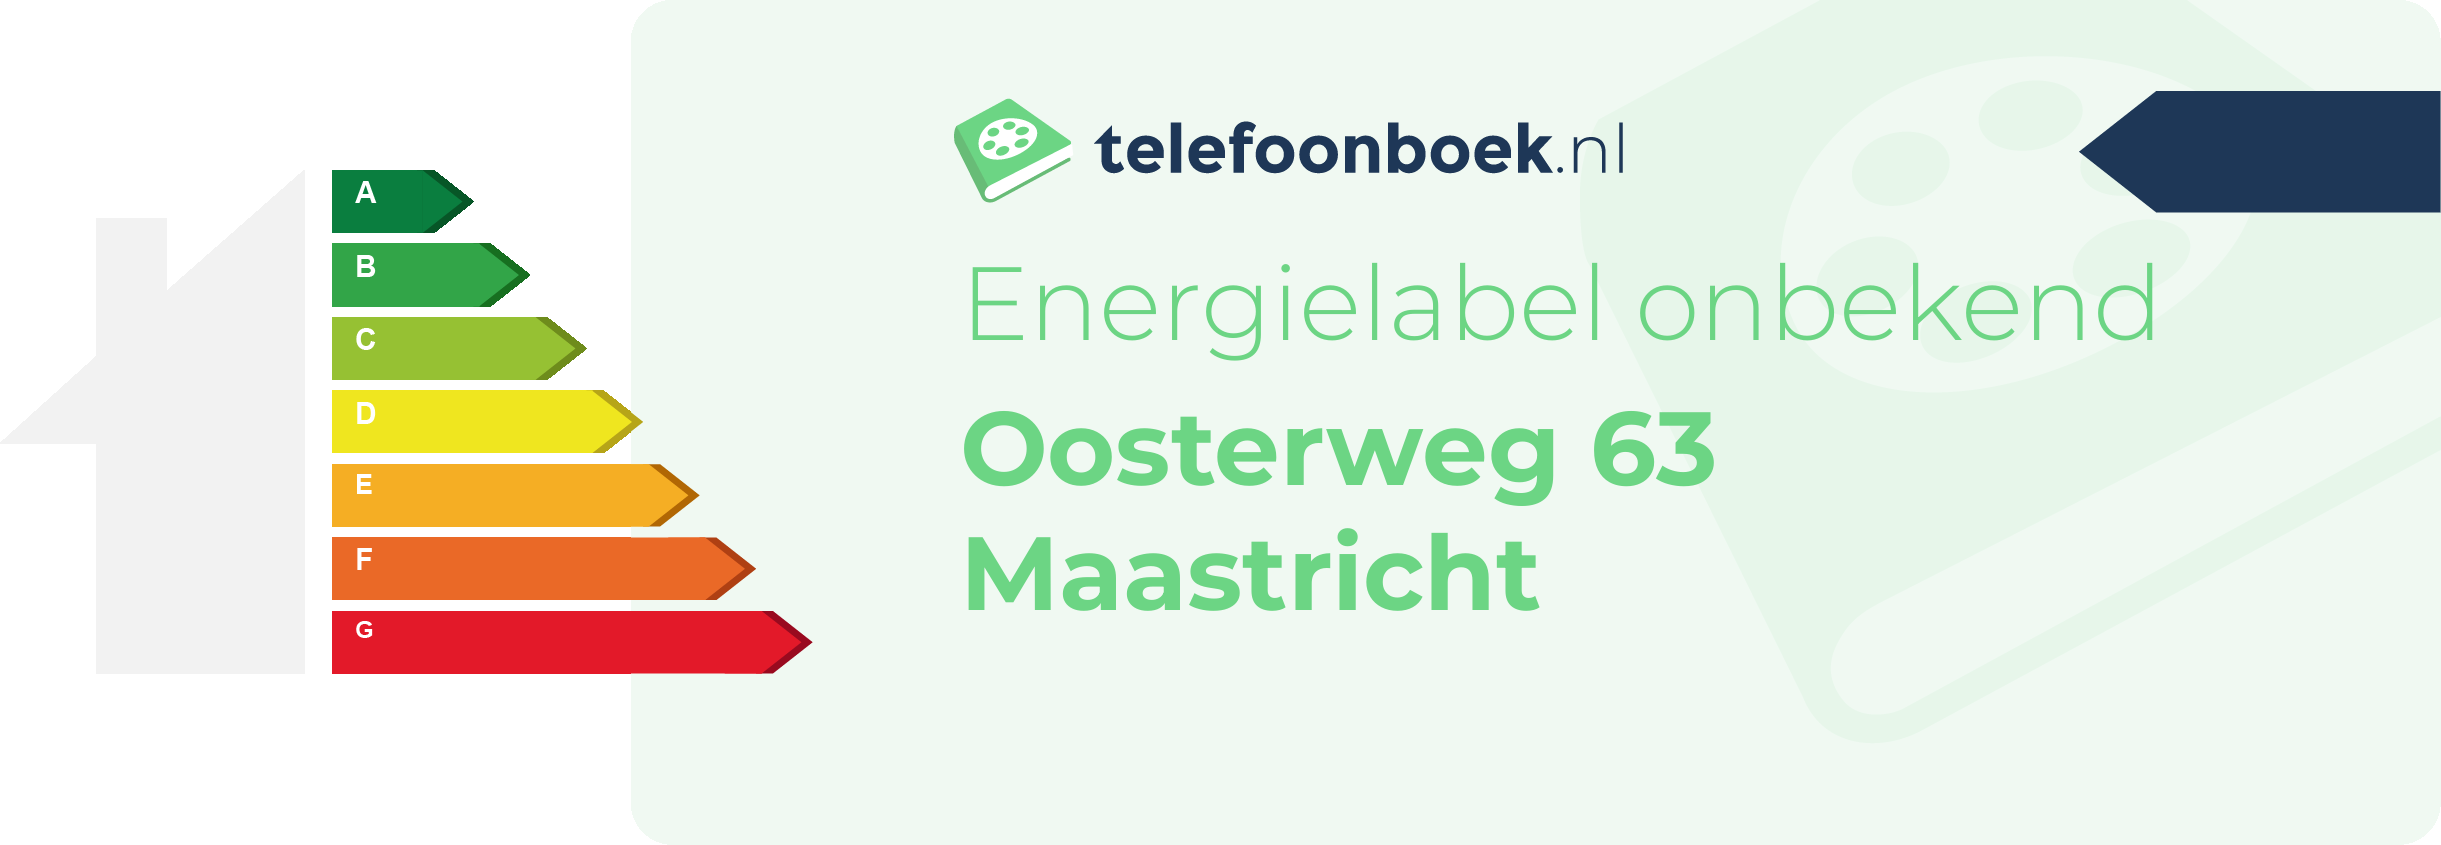 Energielabel Oosterweg 63 Maastricht